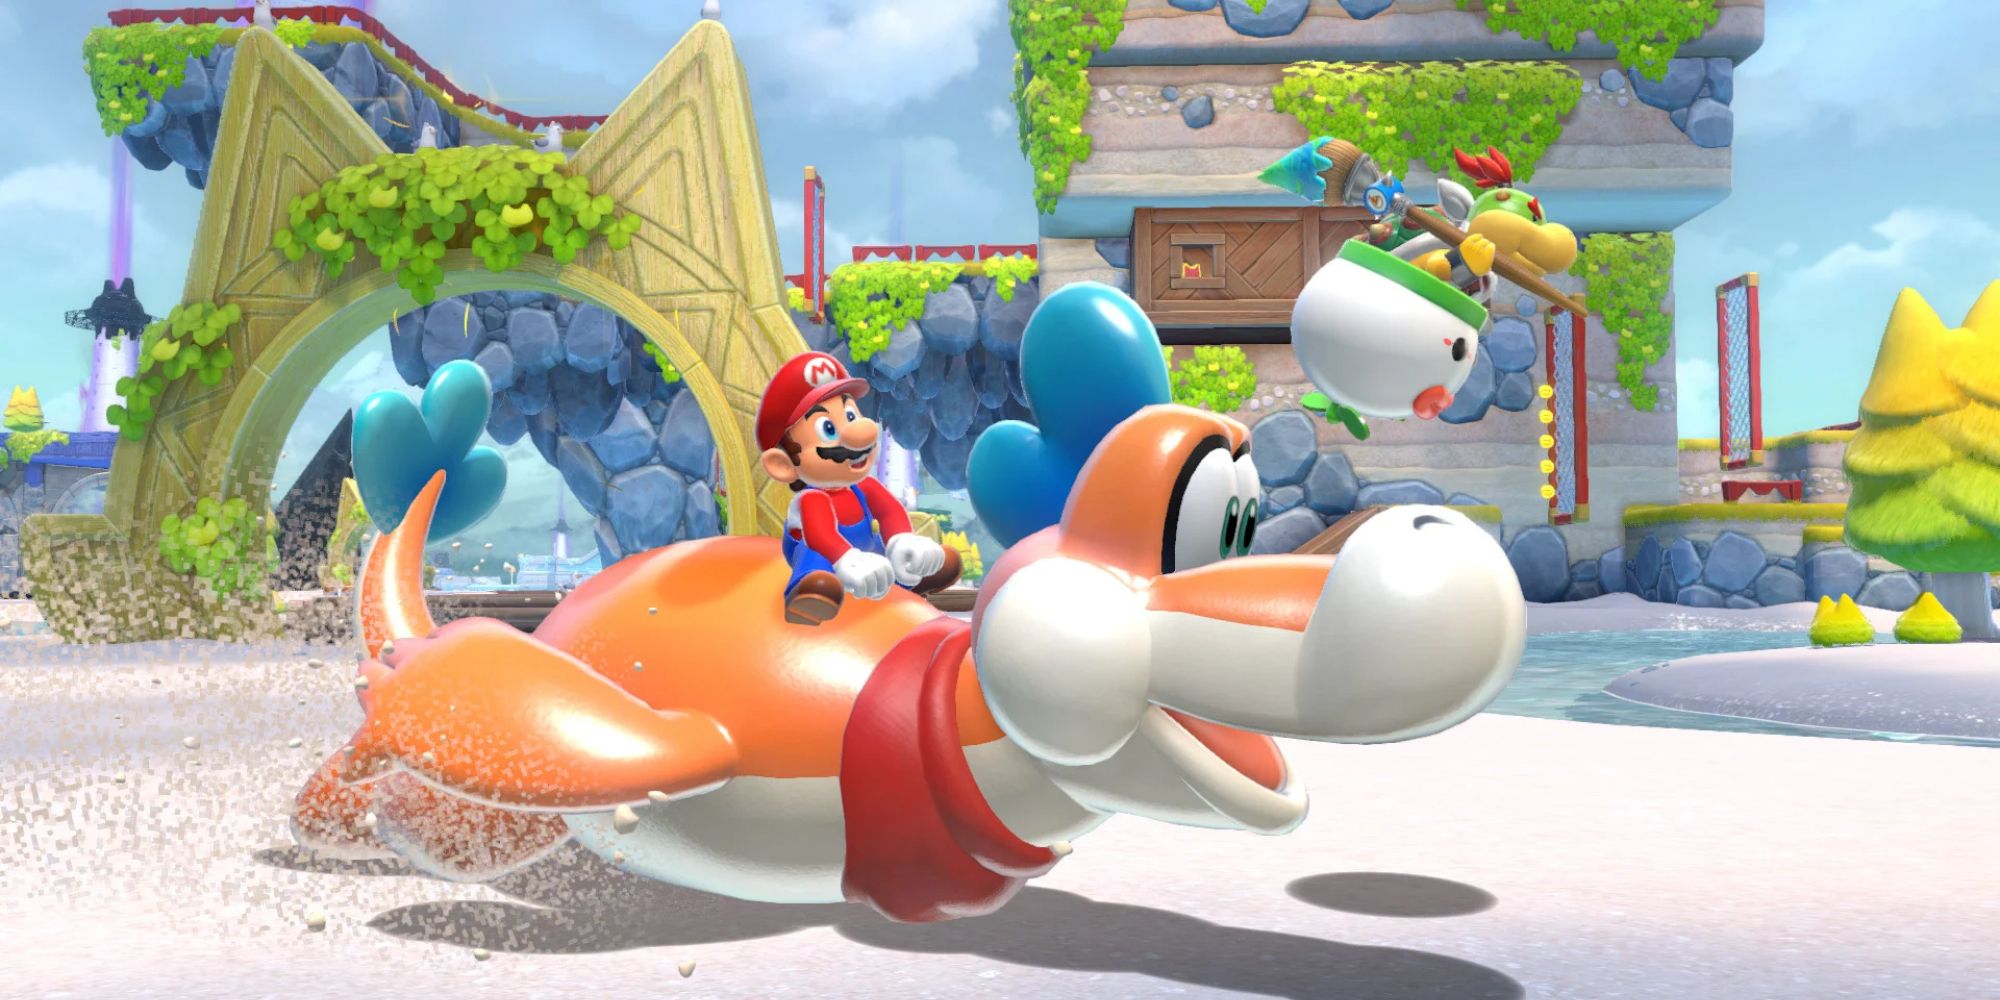 Mario riding Plessie in Mario 3D World